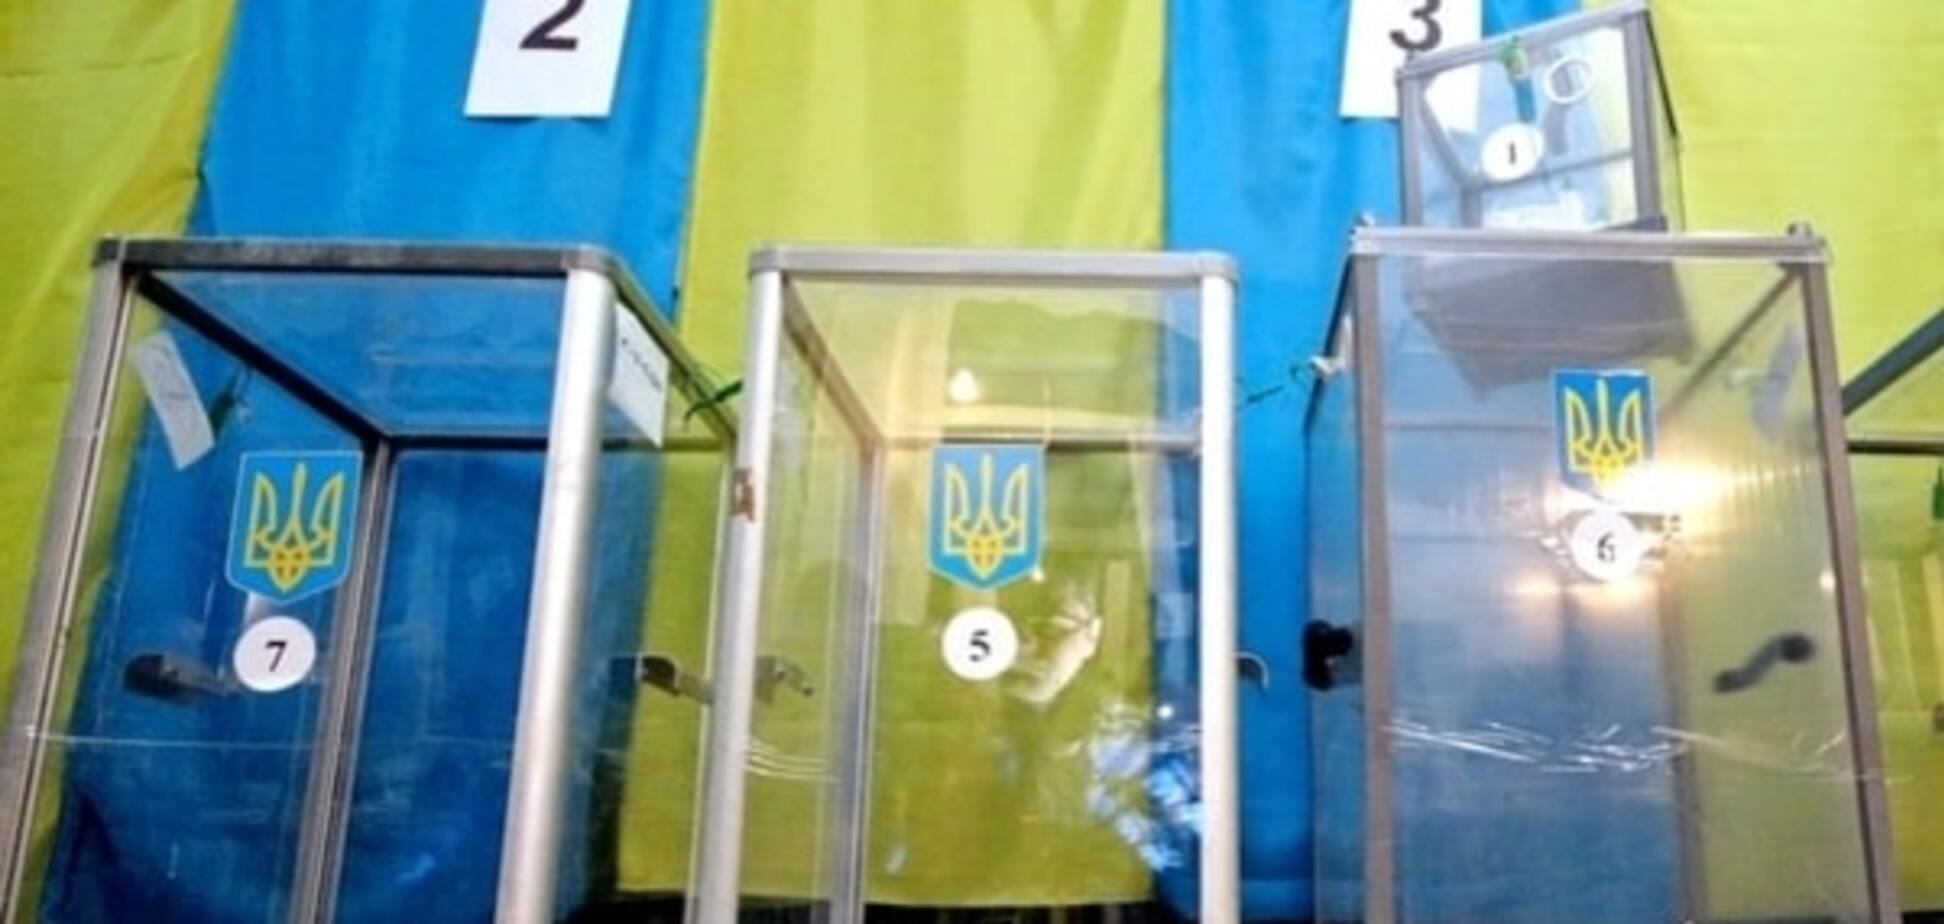 Чтоб не растерялись: украинцам показали видеоурок о правилах голосования